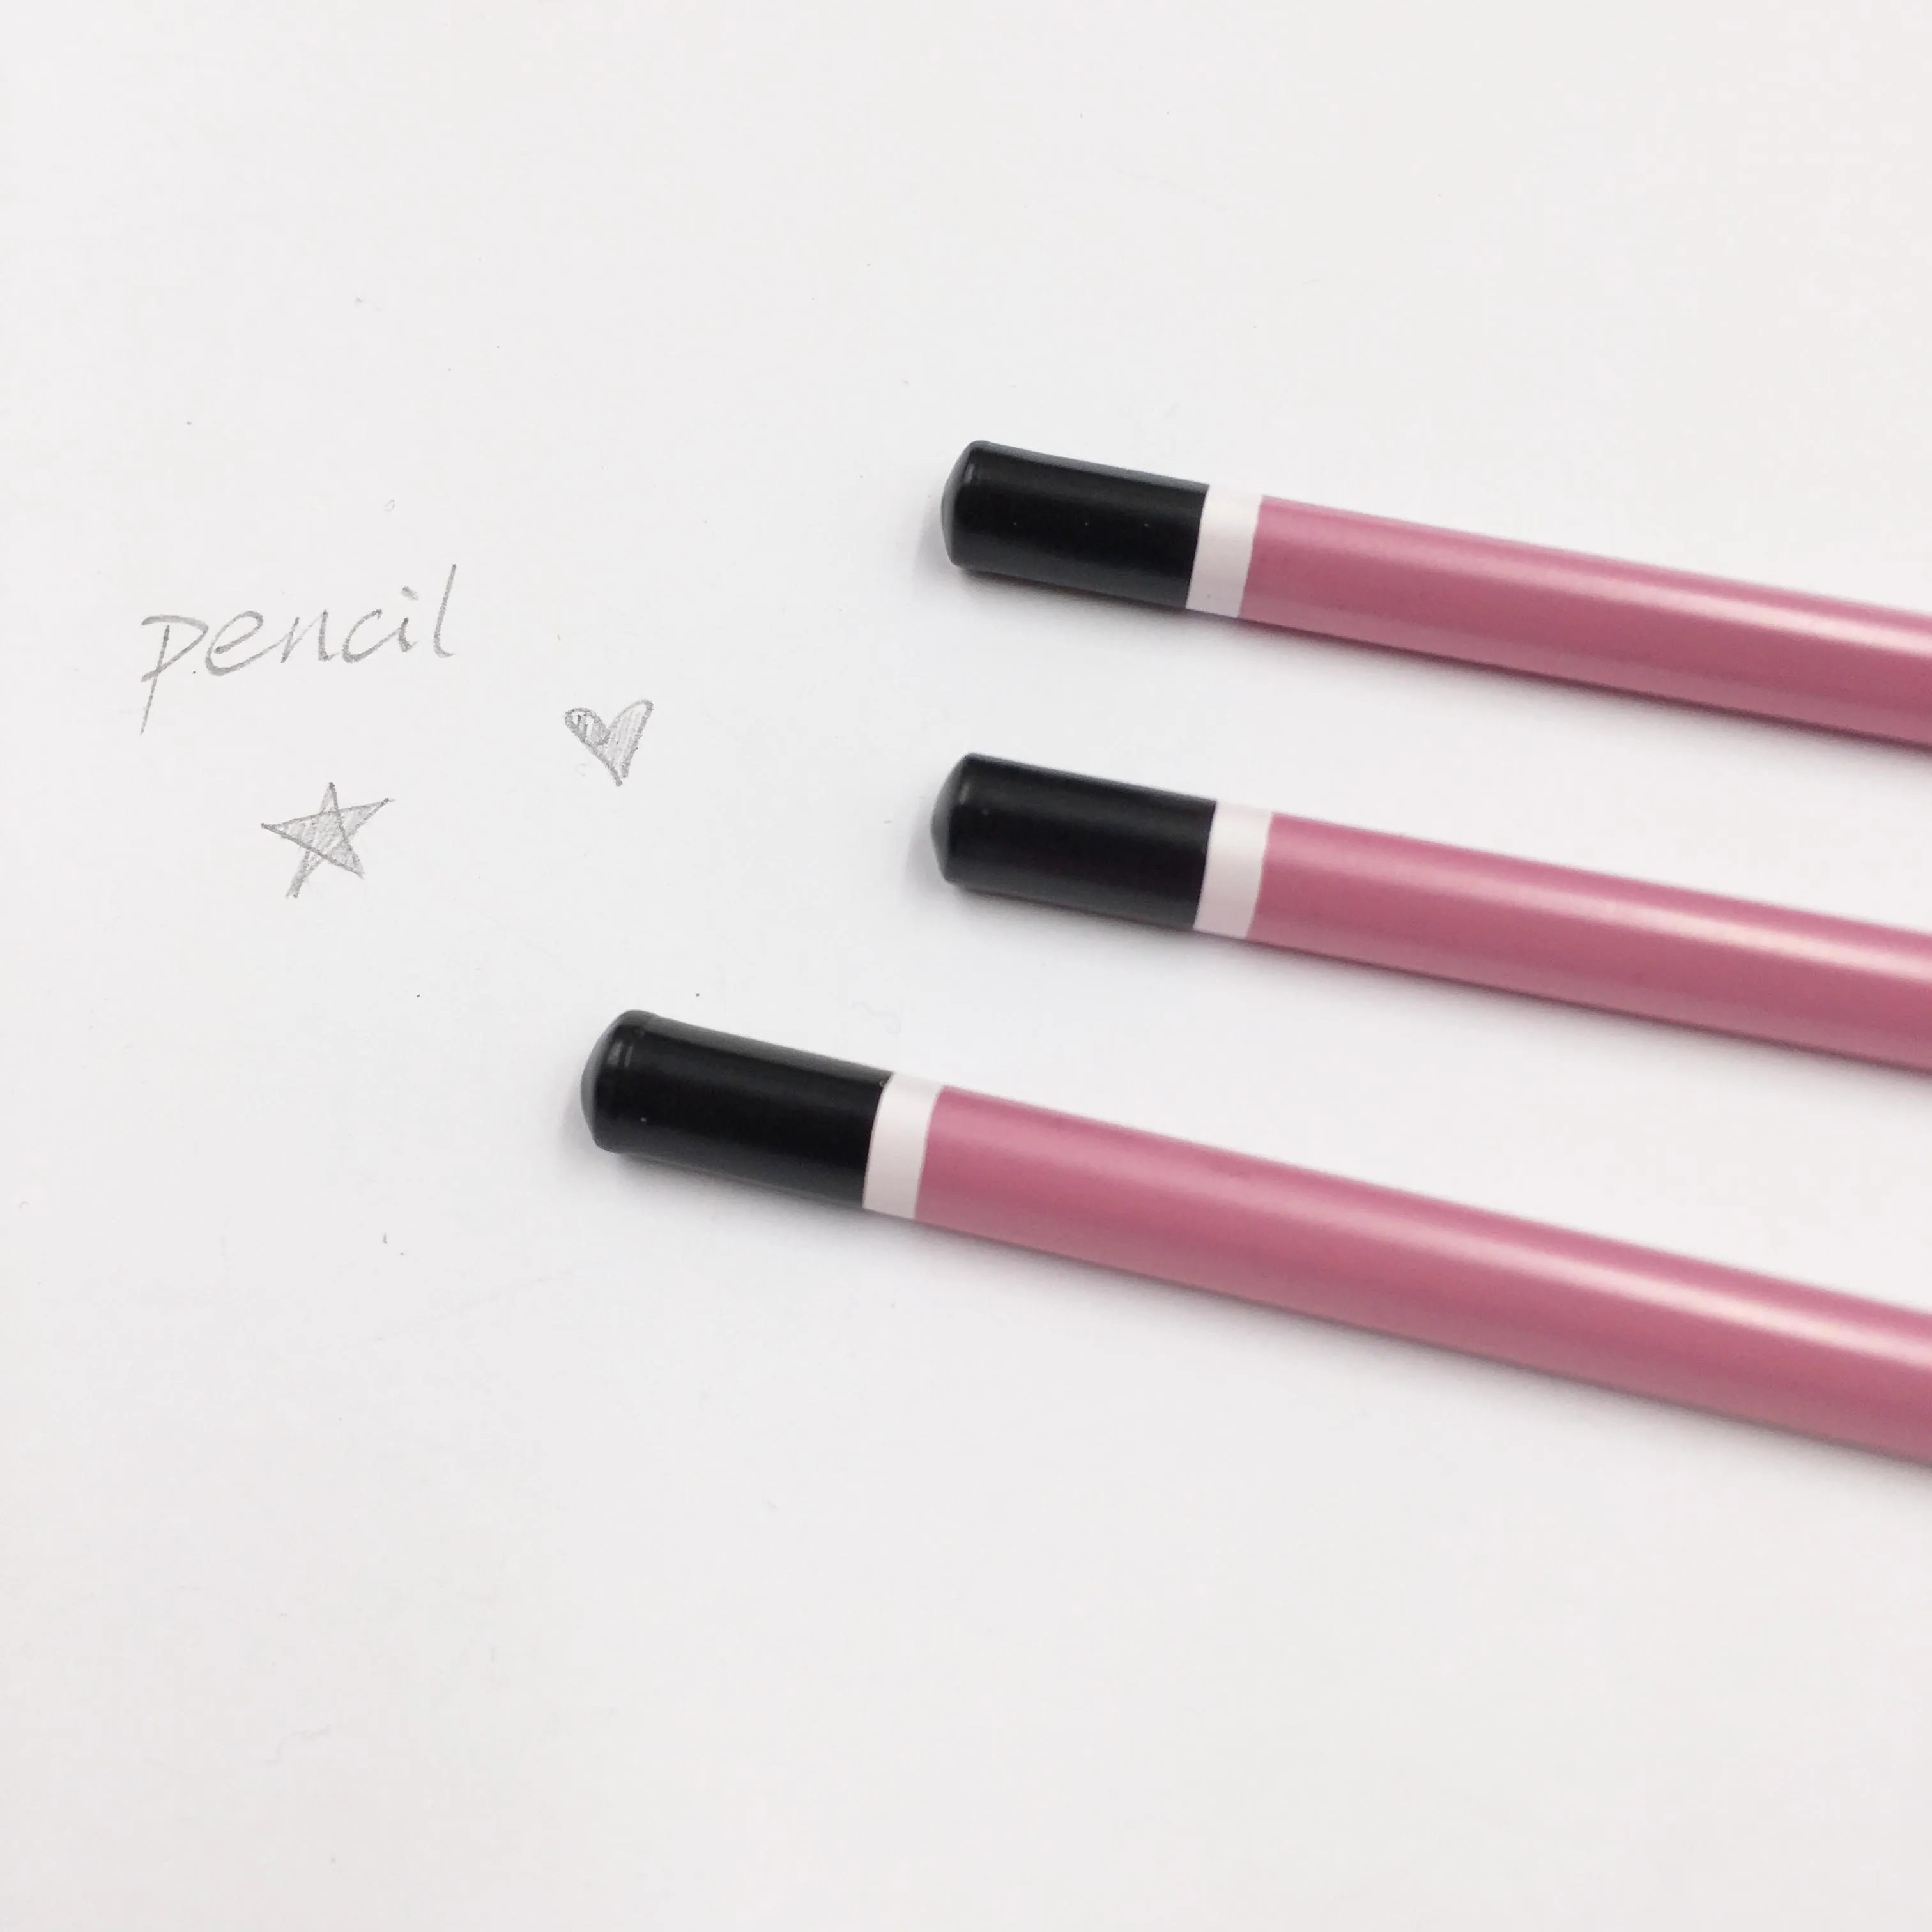 12 шт./лот HB хорошего качества рисунок яркие цвета, простые треугольник симпатичный карандаш канцелярские принадлежности для офиса и школы - Цвет: Розовый